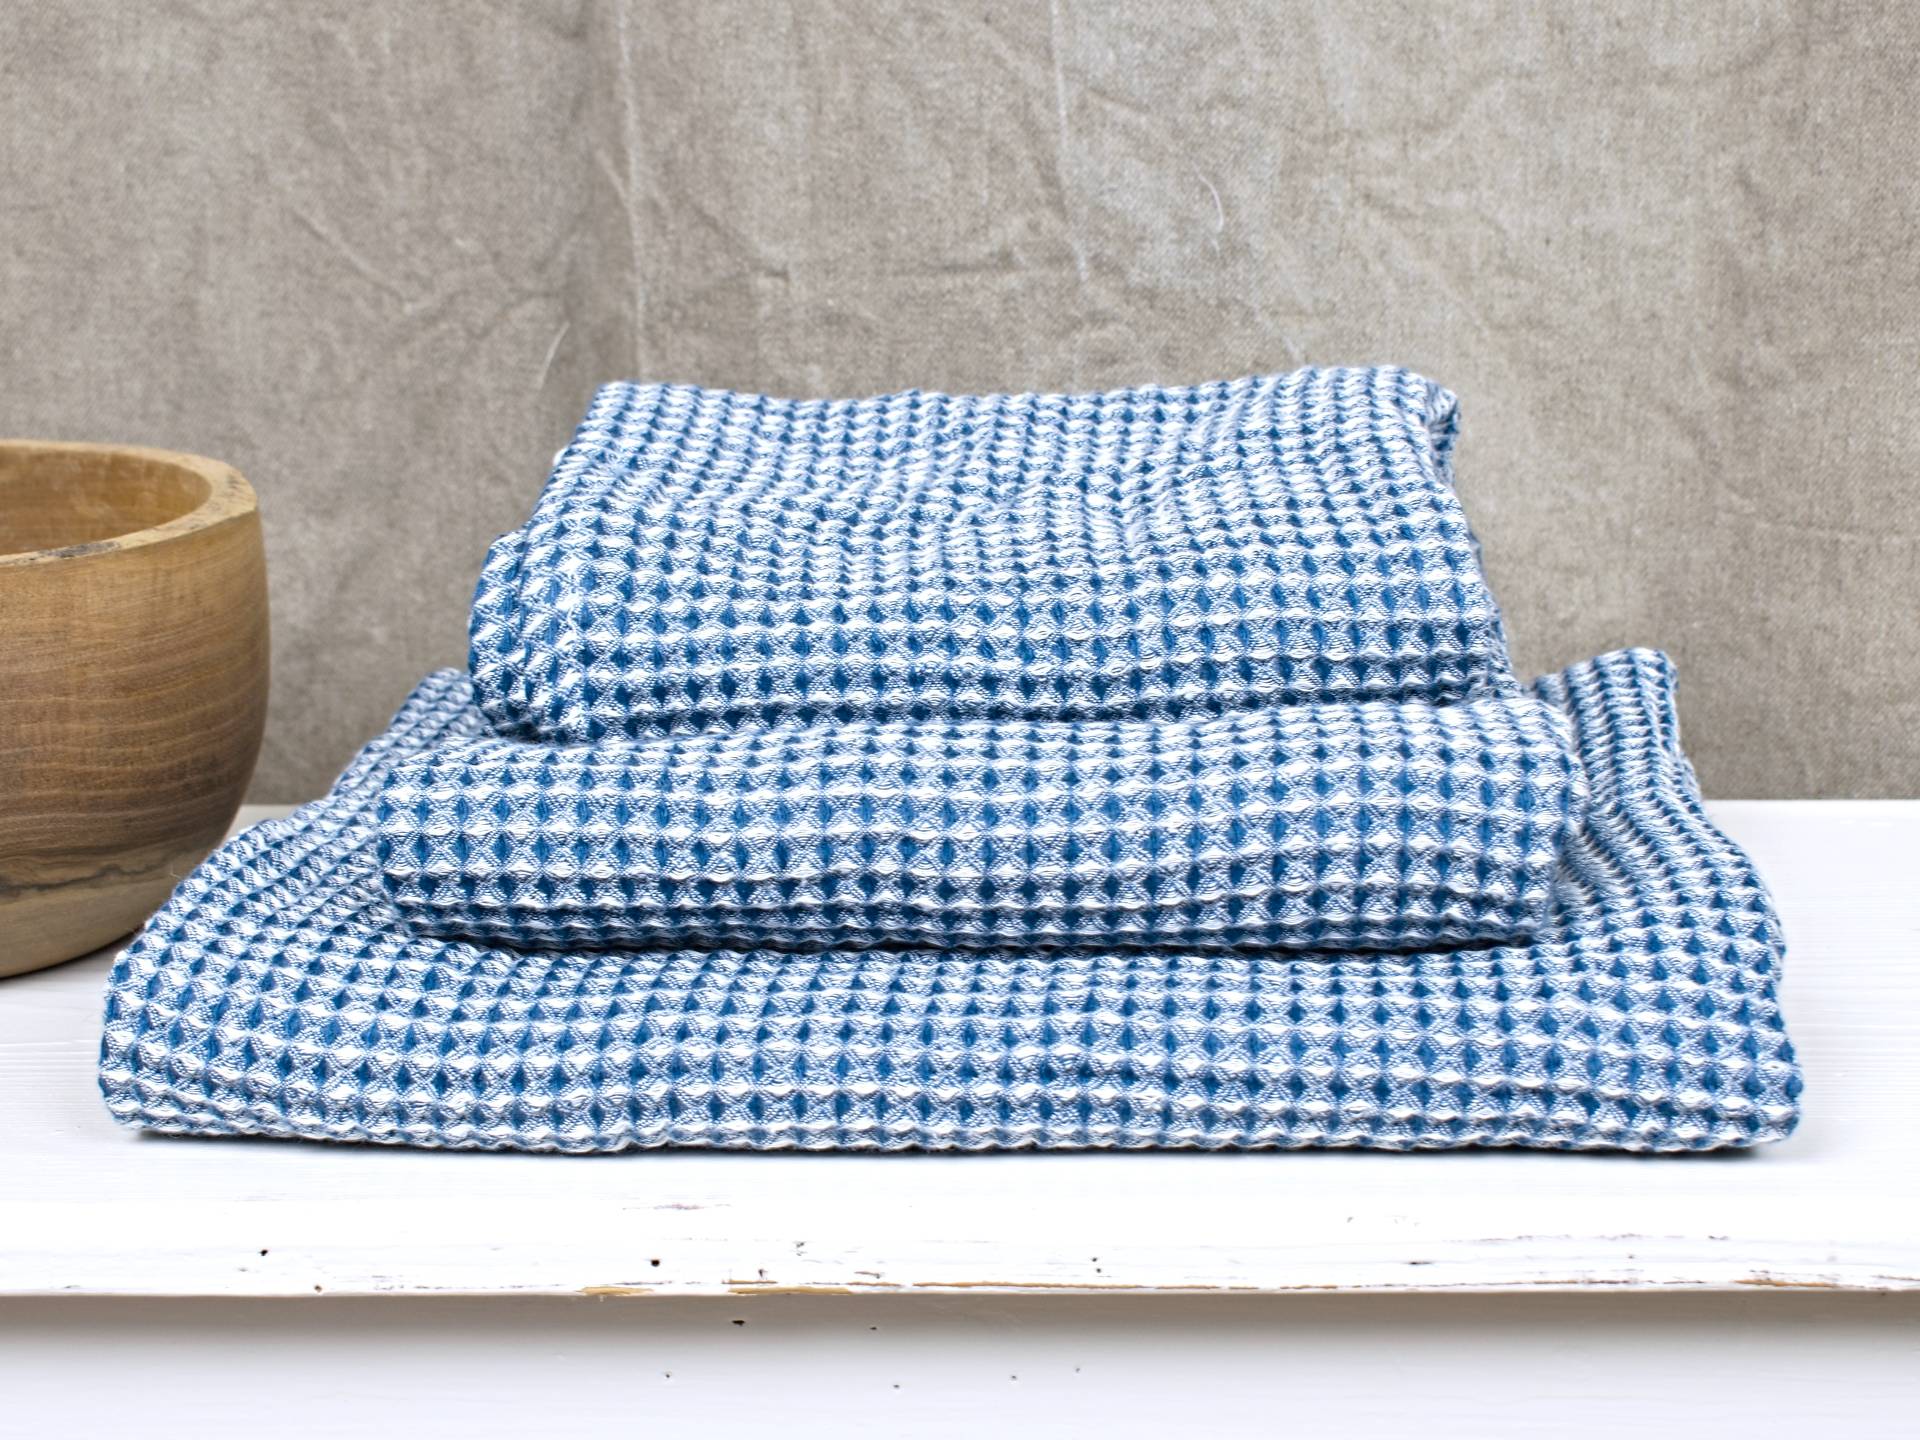 Lněný ručník vaflový modrý 45 x 85 cm